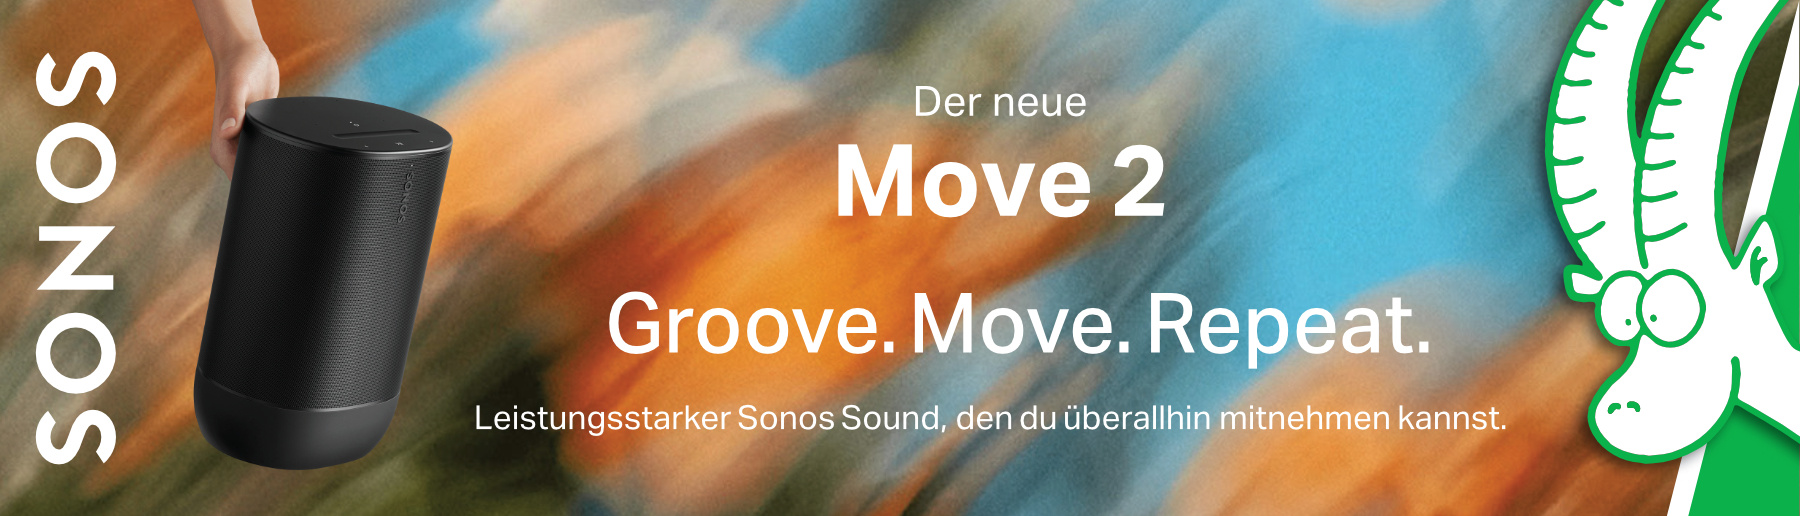 SONOS Move 2